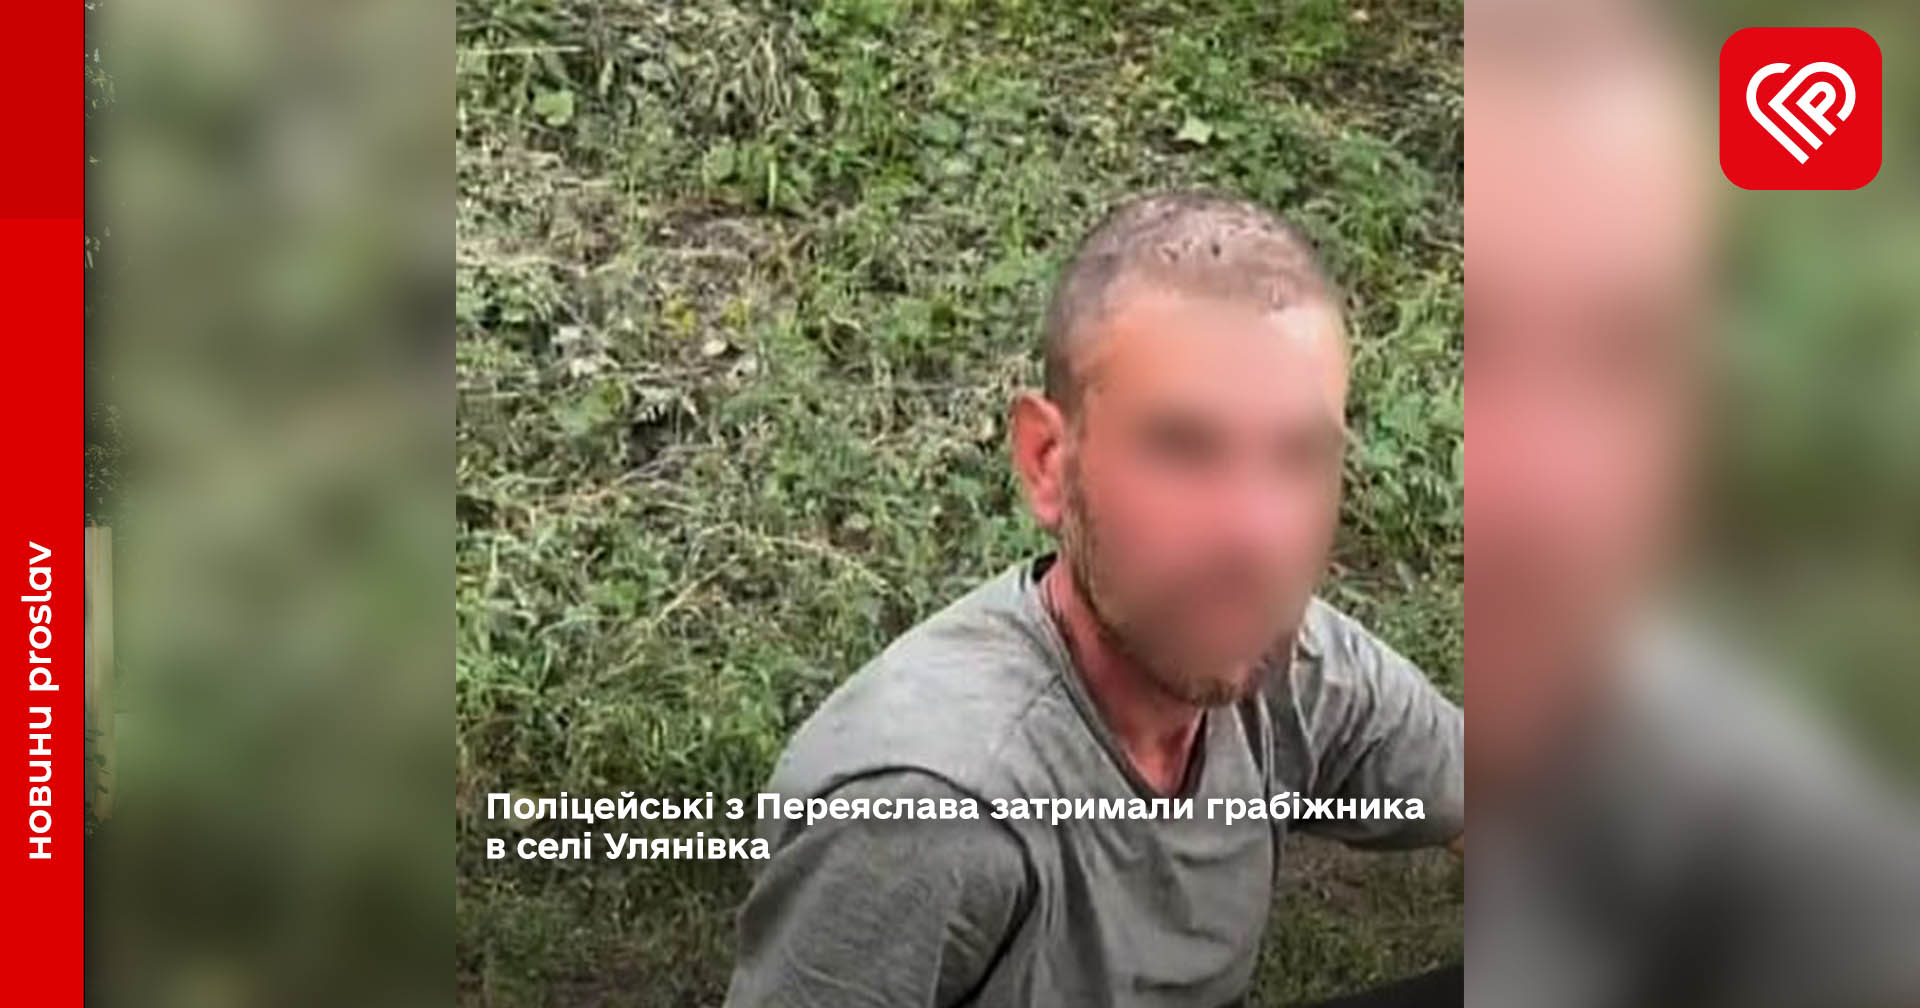 Поліцейські з Переяслава затримали грабіжника в селі Улянівка